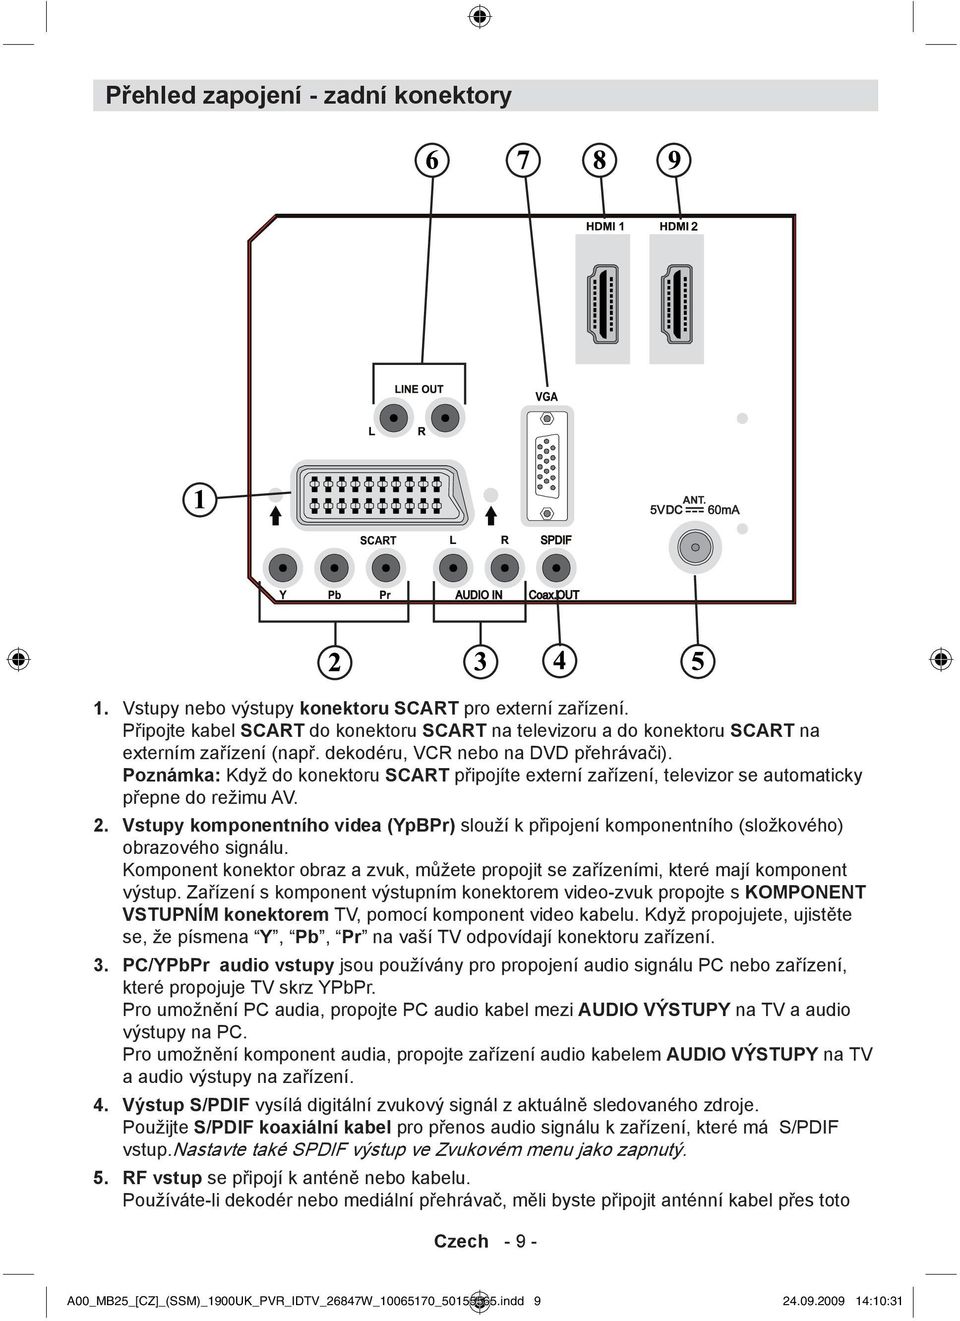 Vstupy komponentního videa (YpBPr) slouží k připojení komponentního (složkového) obrazového signálu. Komponent konektor obraz a zvuk, můžete propojit se zařízeními, které mají komponent výstup.